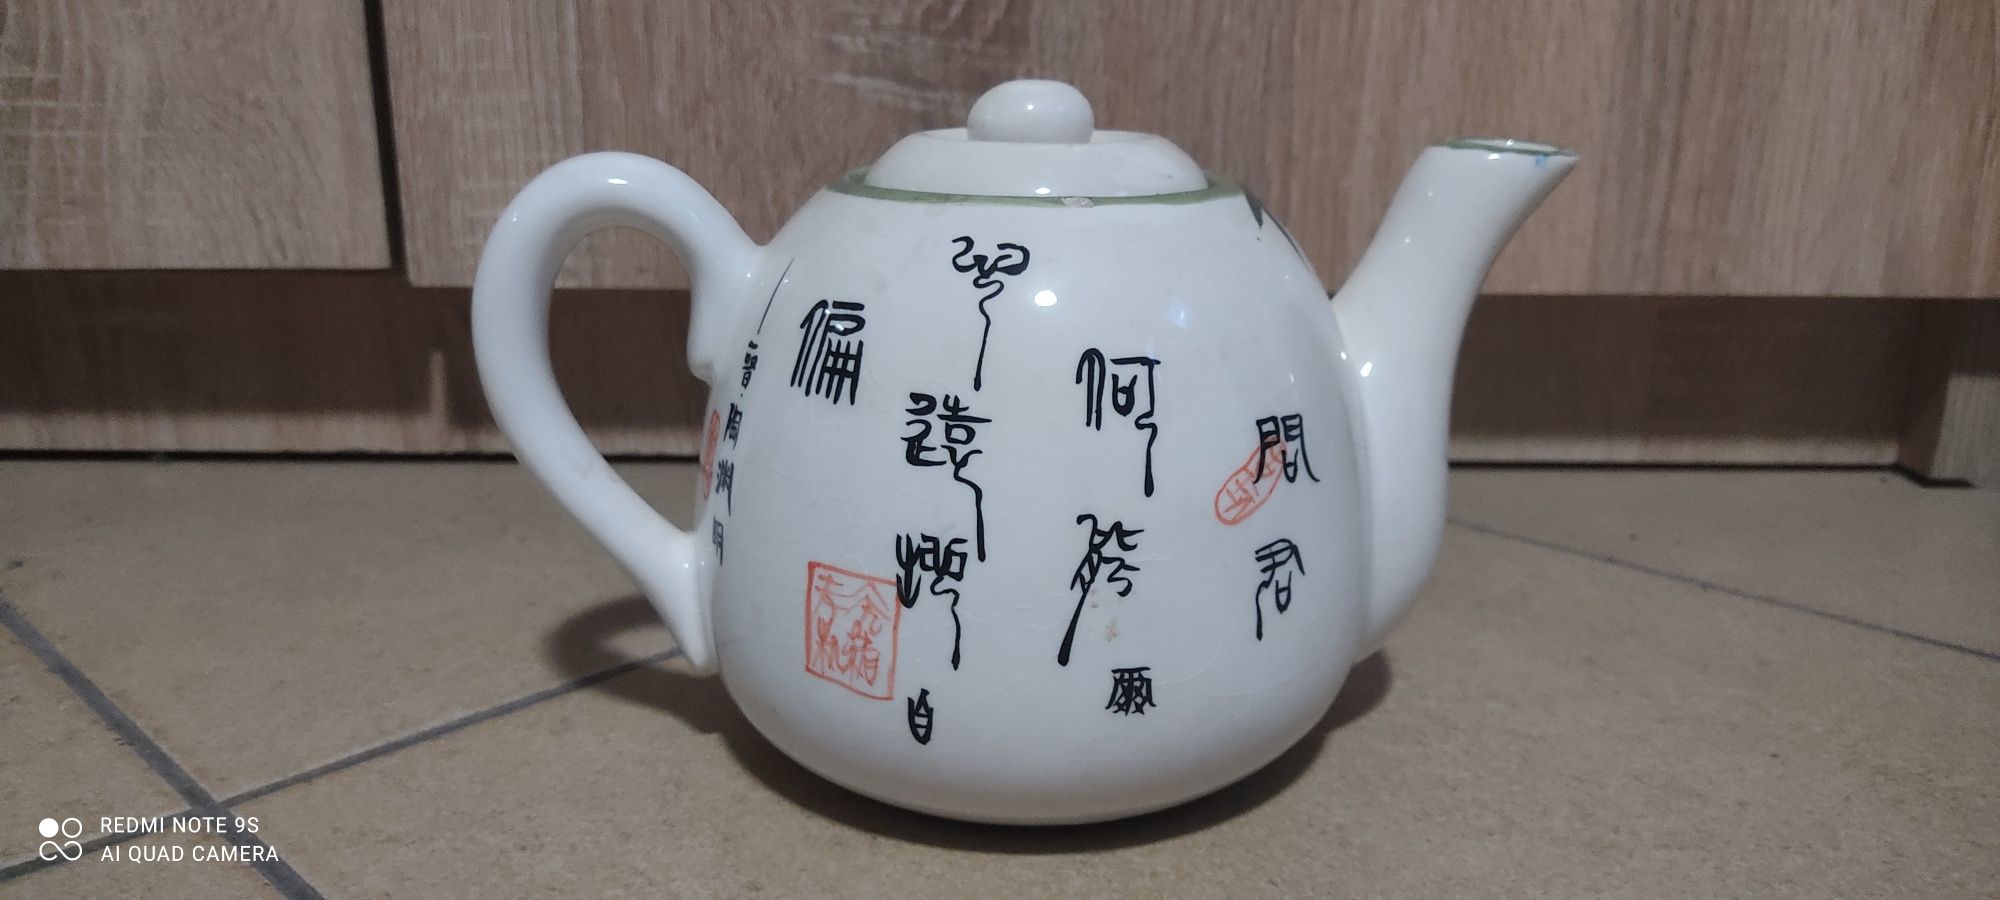 Dzbanek do herbaty Chiński nowy